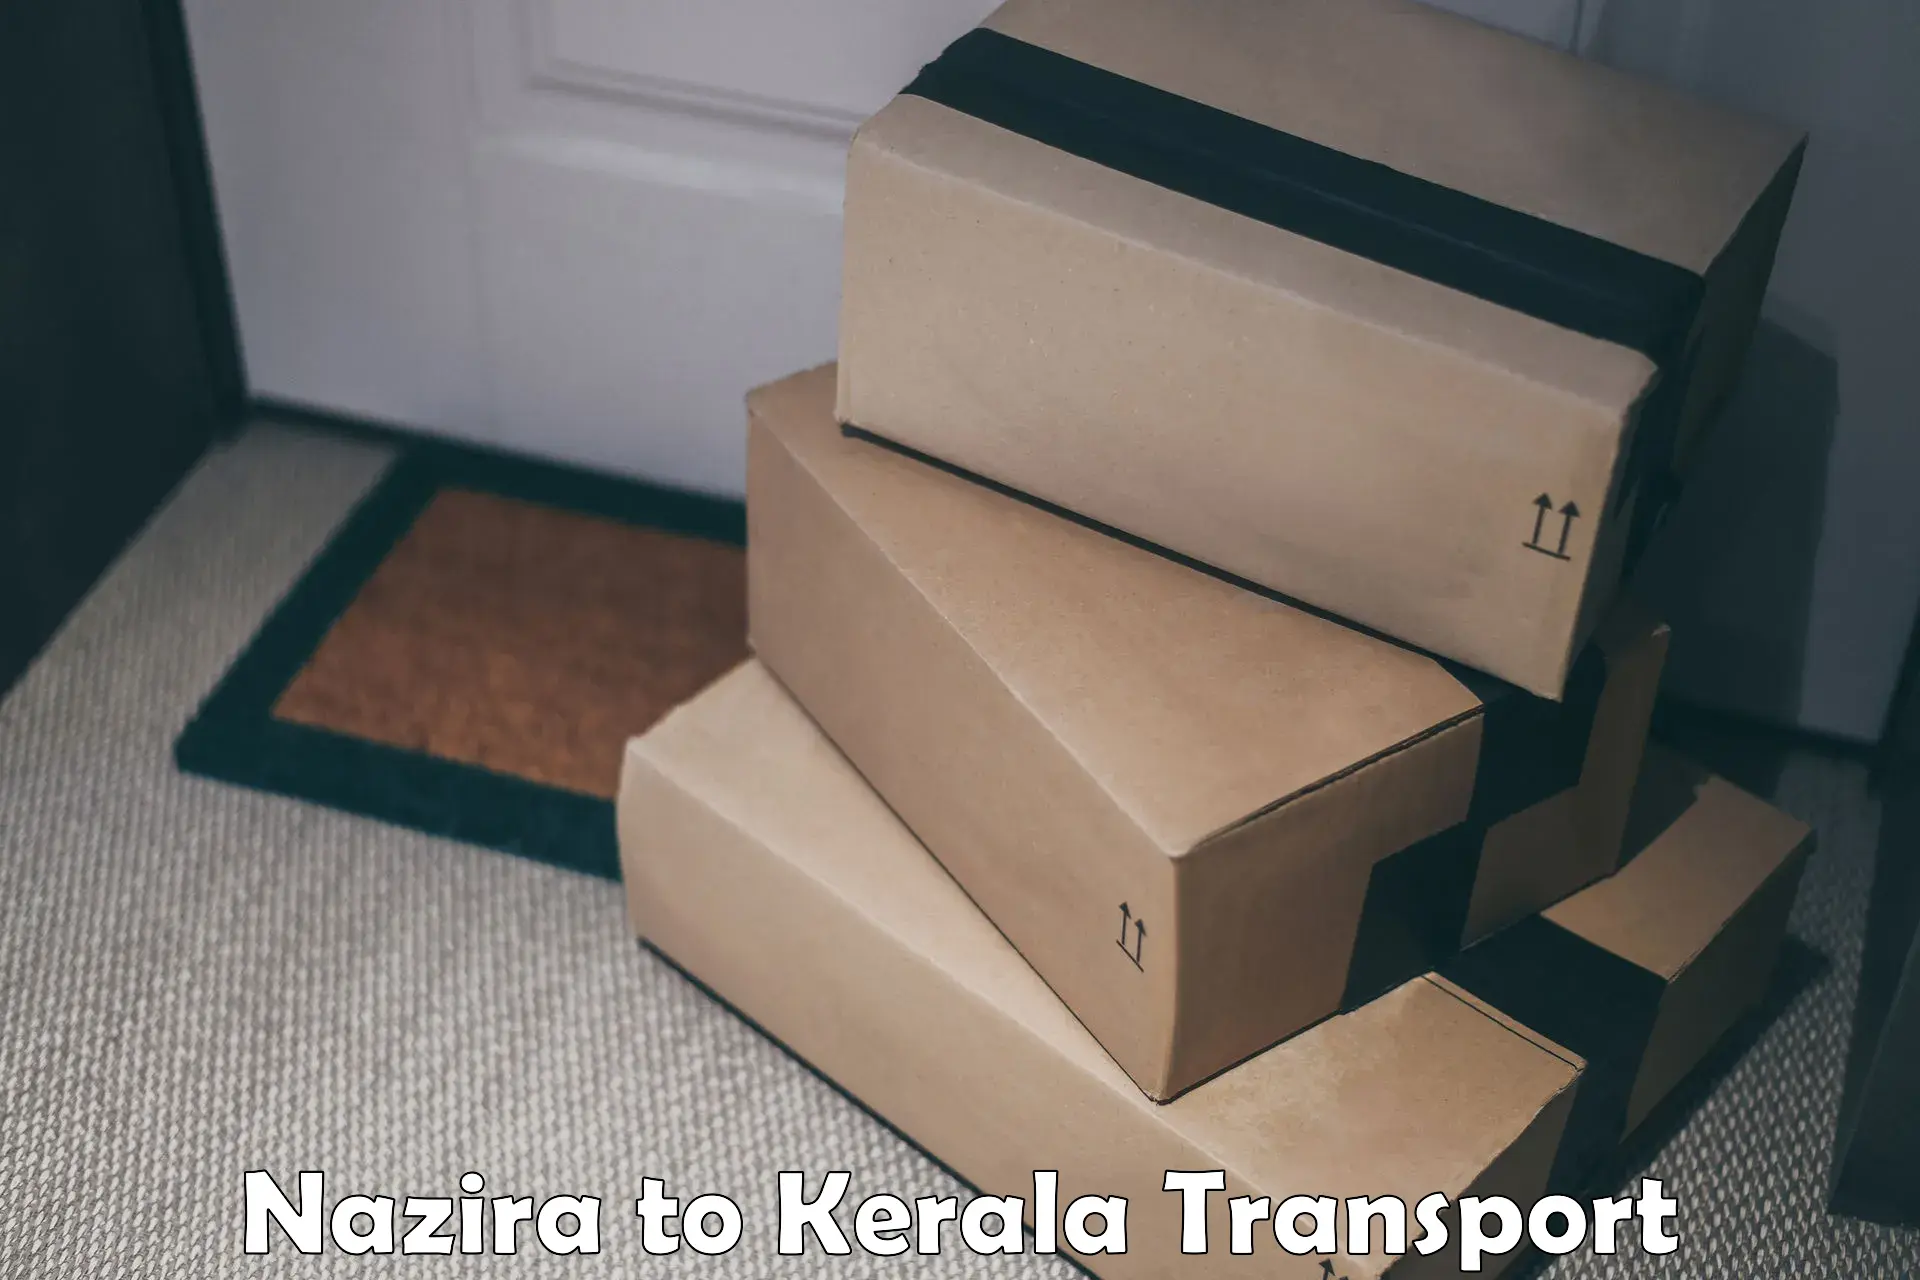 Transport services Nazira to Thiruvananthapuram